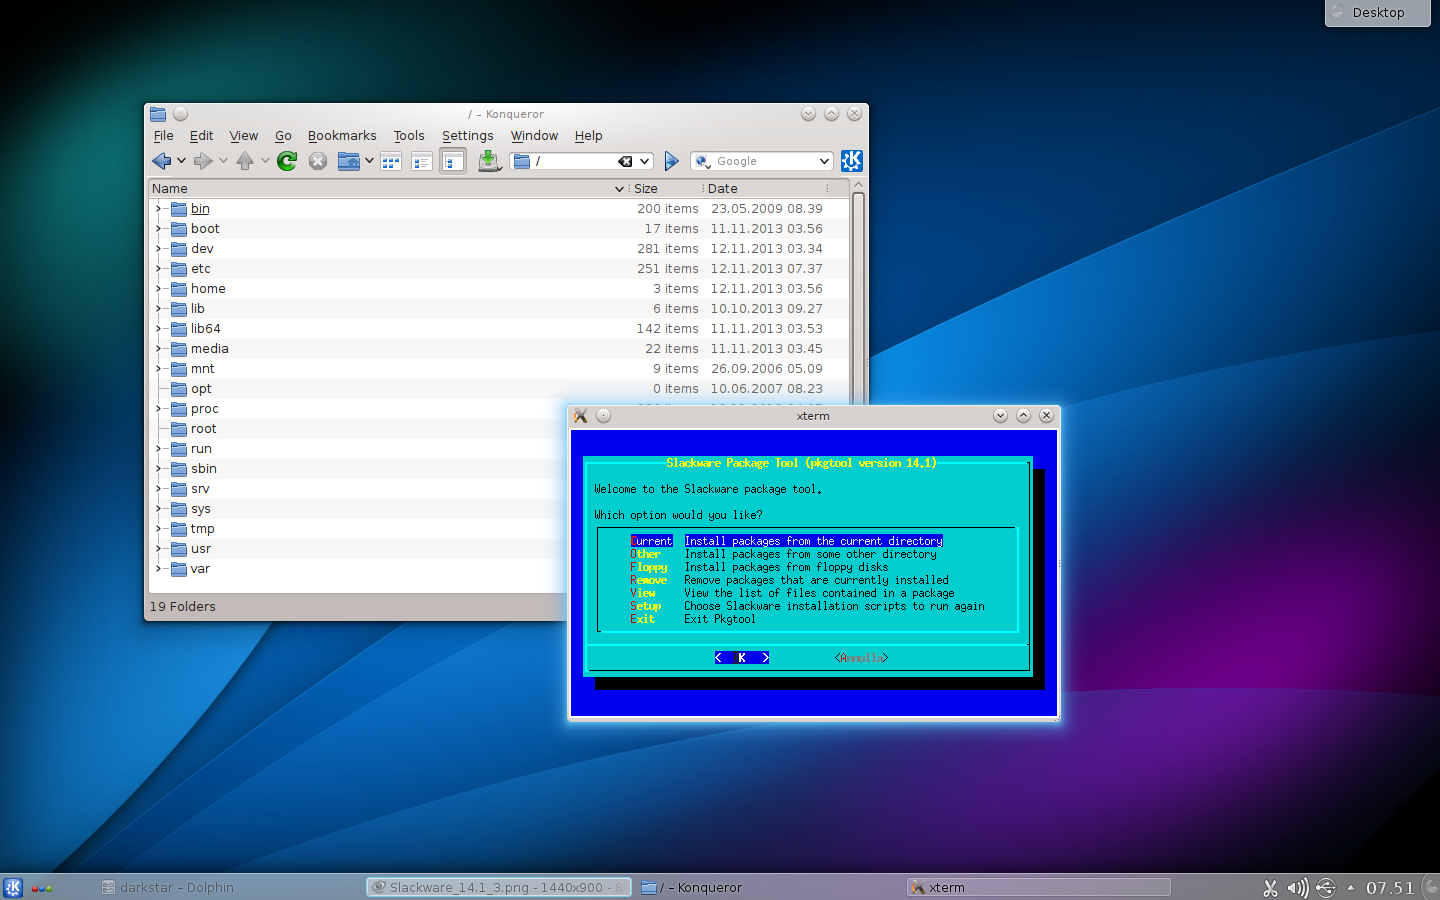 Slackware 14.1 